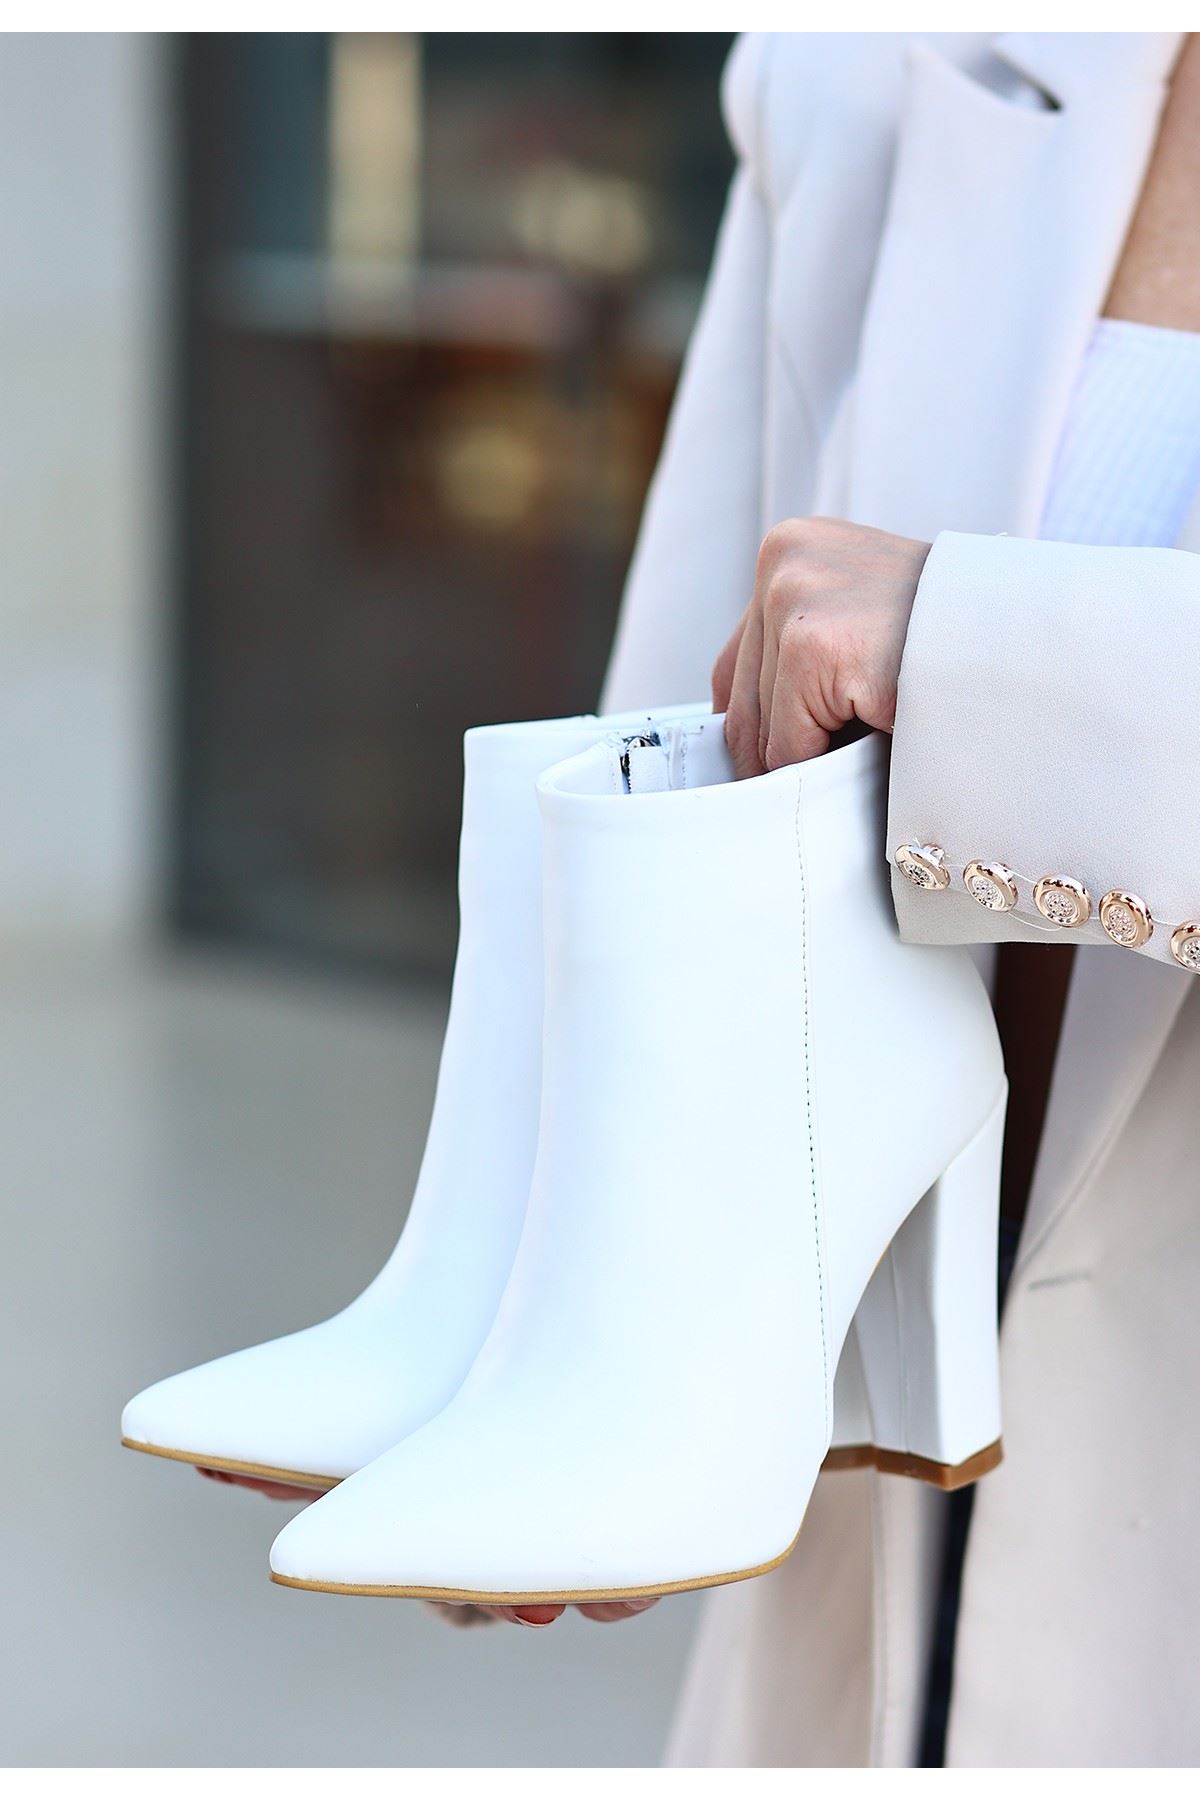 Mida Shoes Loora Beyaz Deri Topuklu Kadın Bot